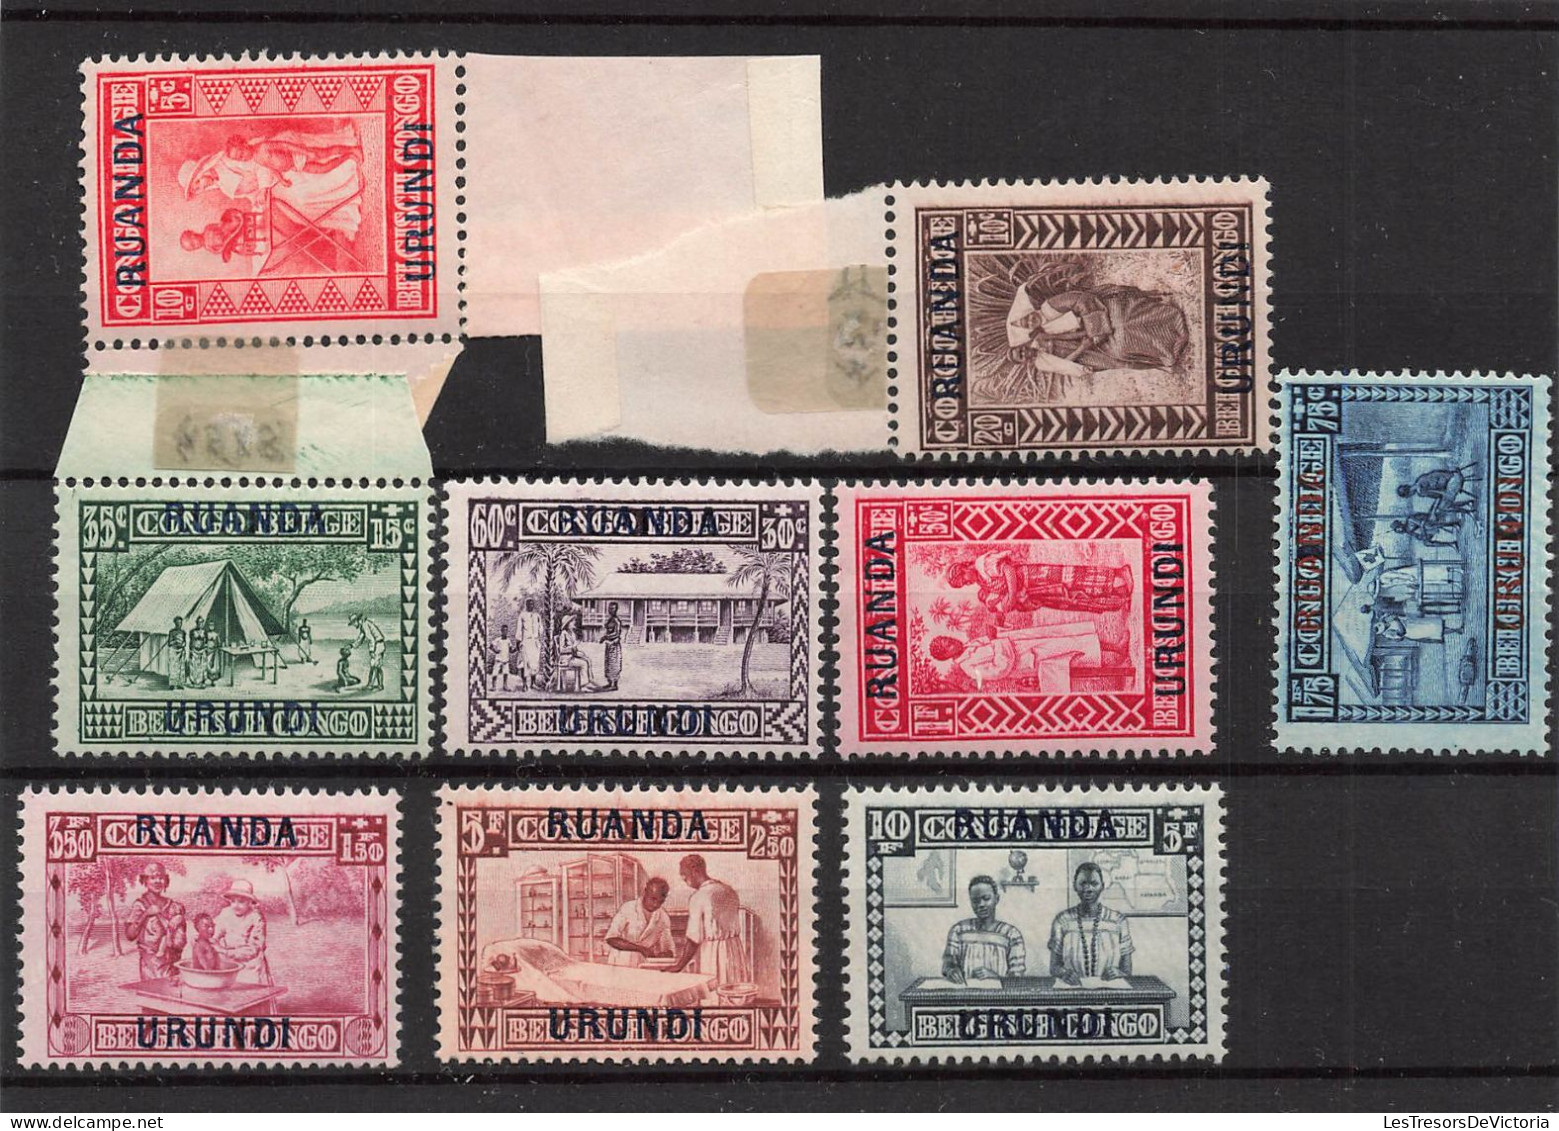 Timbres - Ruanda Urundi - 1930 - COB 81/89*Goutte De Lait Surchargé - Cote75 - Unused Stamps